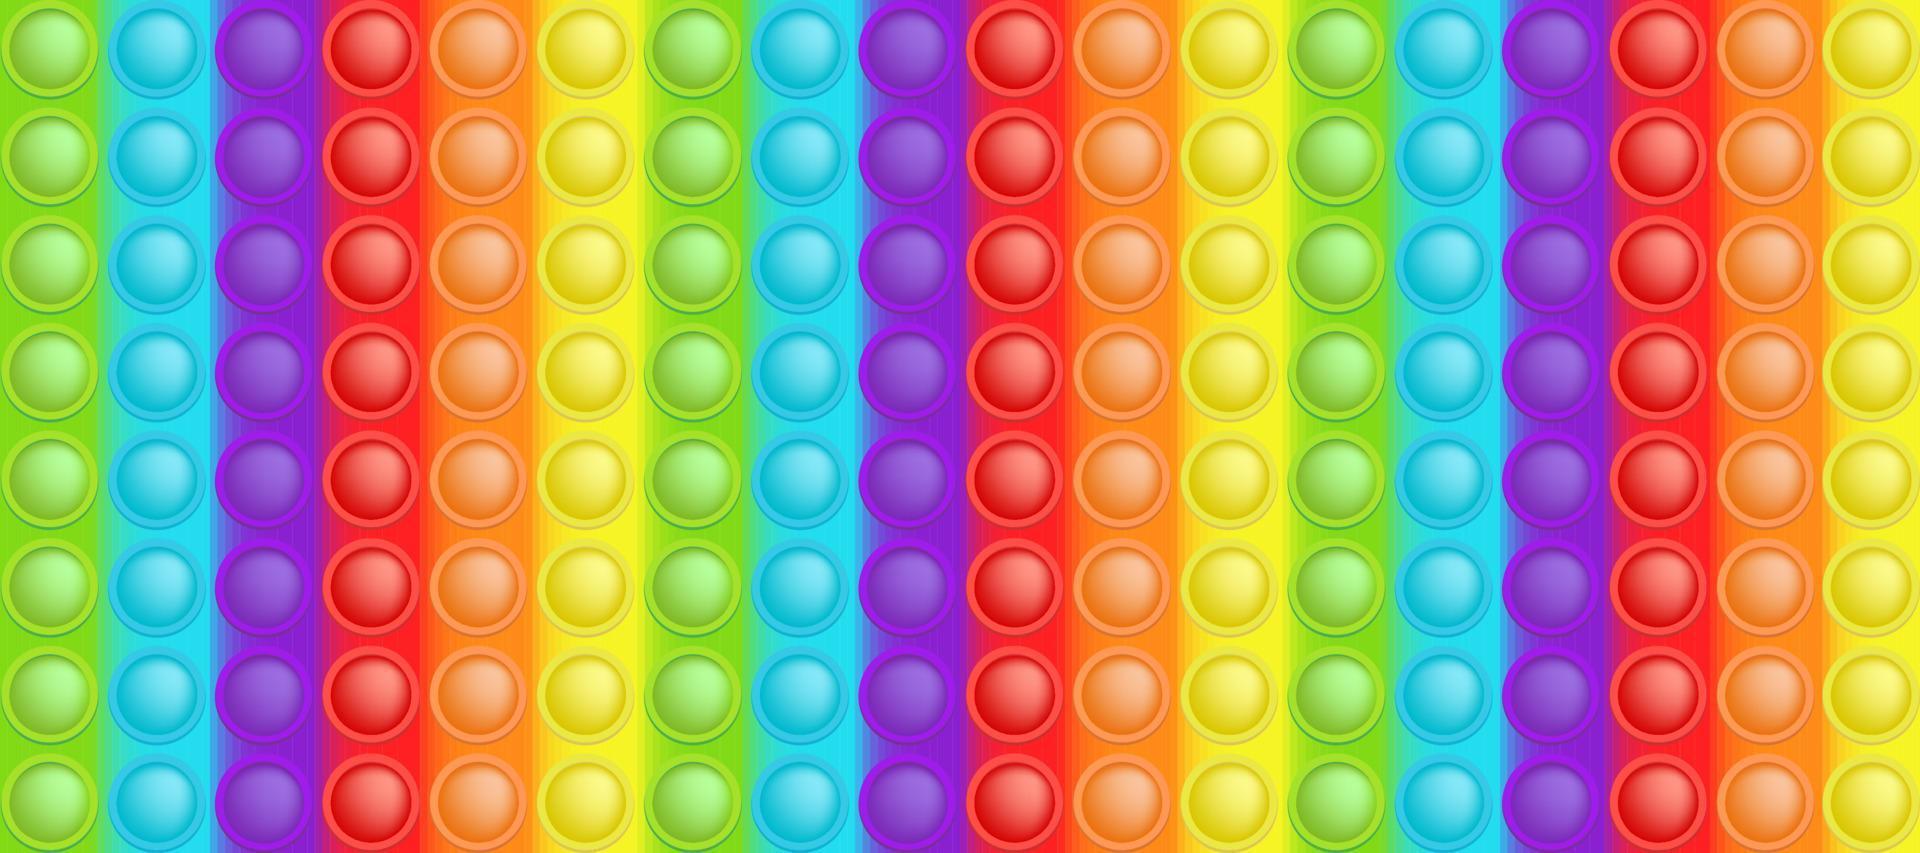 popping leksak färgrik regnbåge bakgrund tycka om en modern kisel leksak för fidgets. beroendeframkallande anti påfrestning bubbla leksak i ljus färger. vektor illustration i rektangel formatera lämplig för bunner.